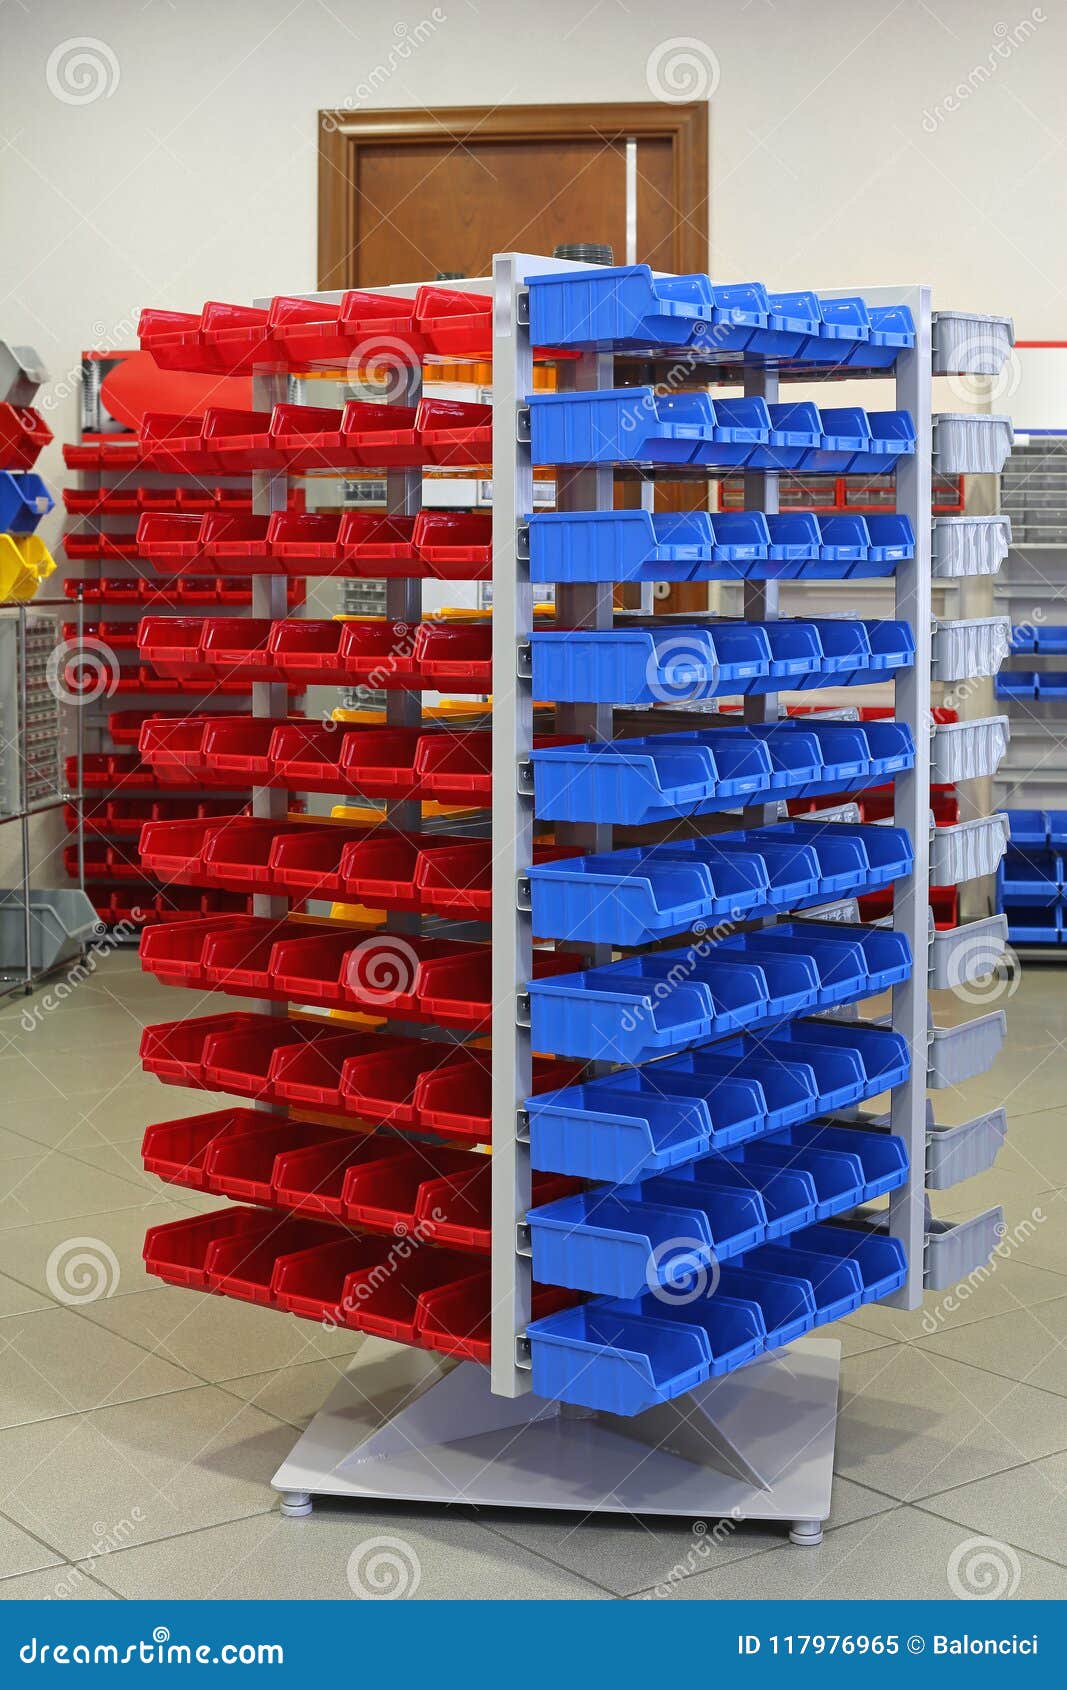 Workshop Storage stock image. Image of workshop, logistic - 117976965